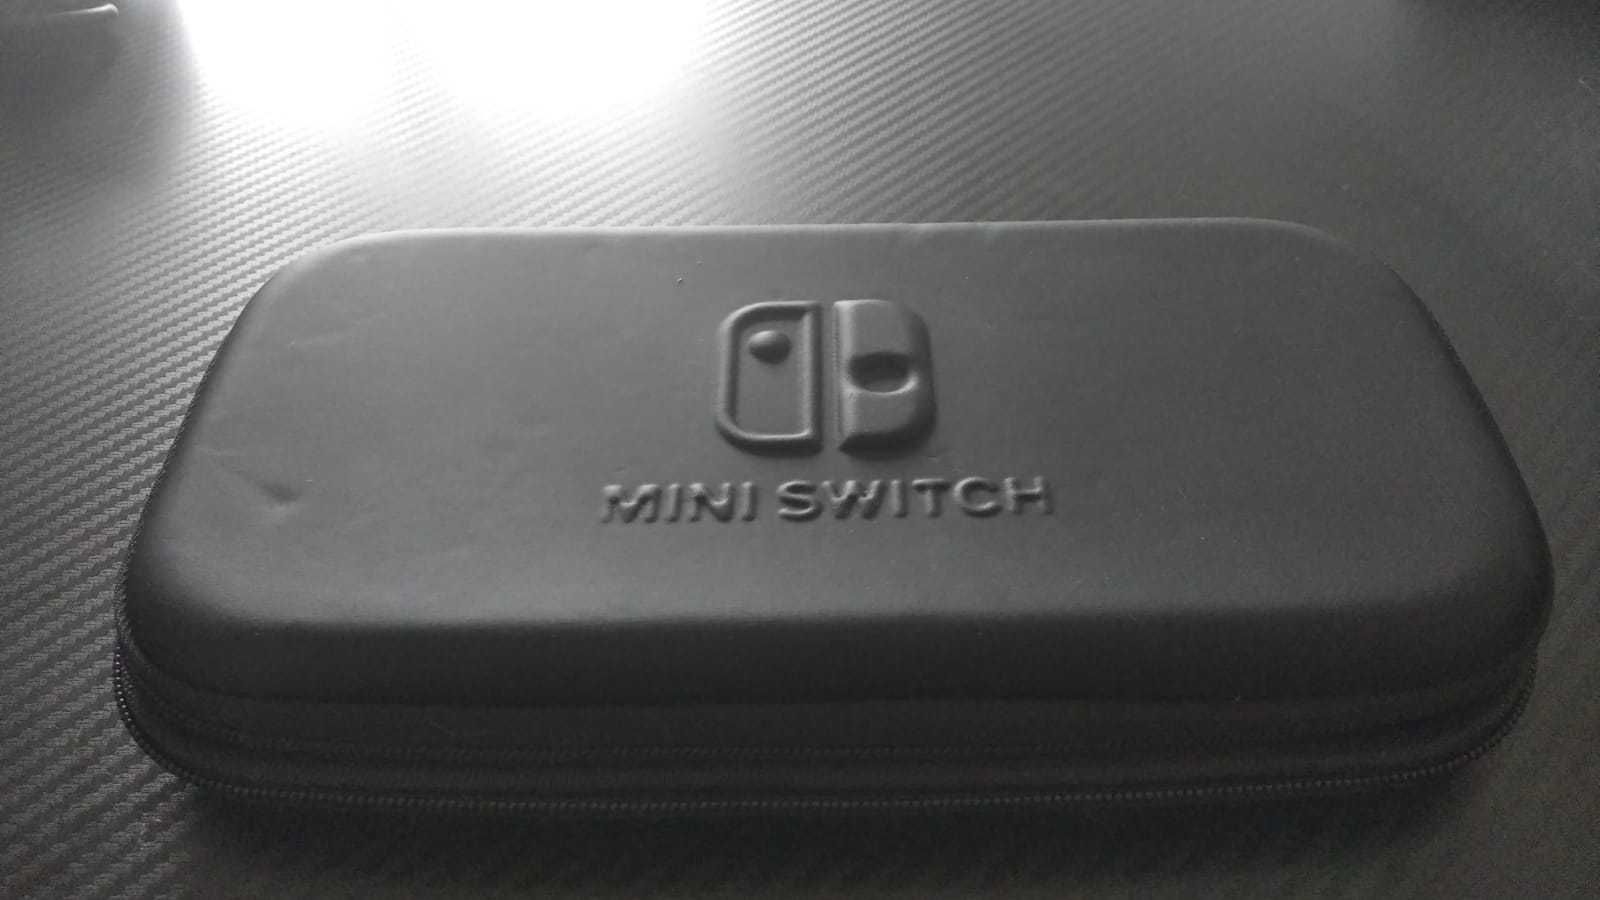 Nintendo switch lite konsola przenośna